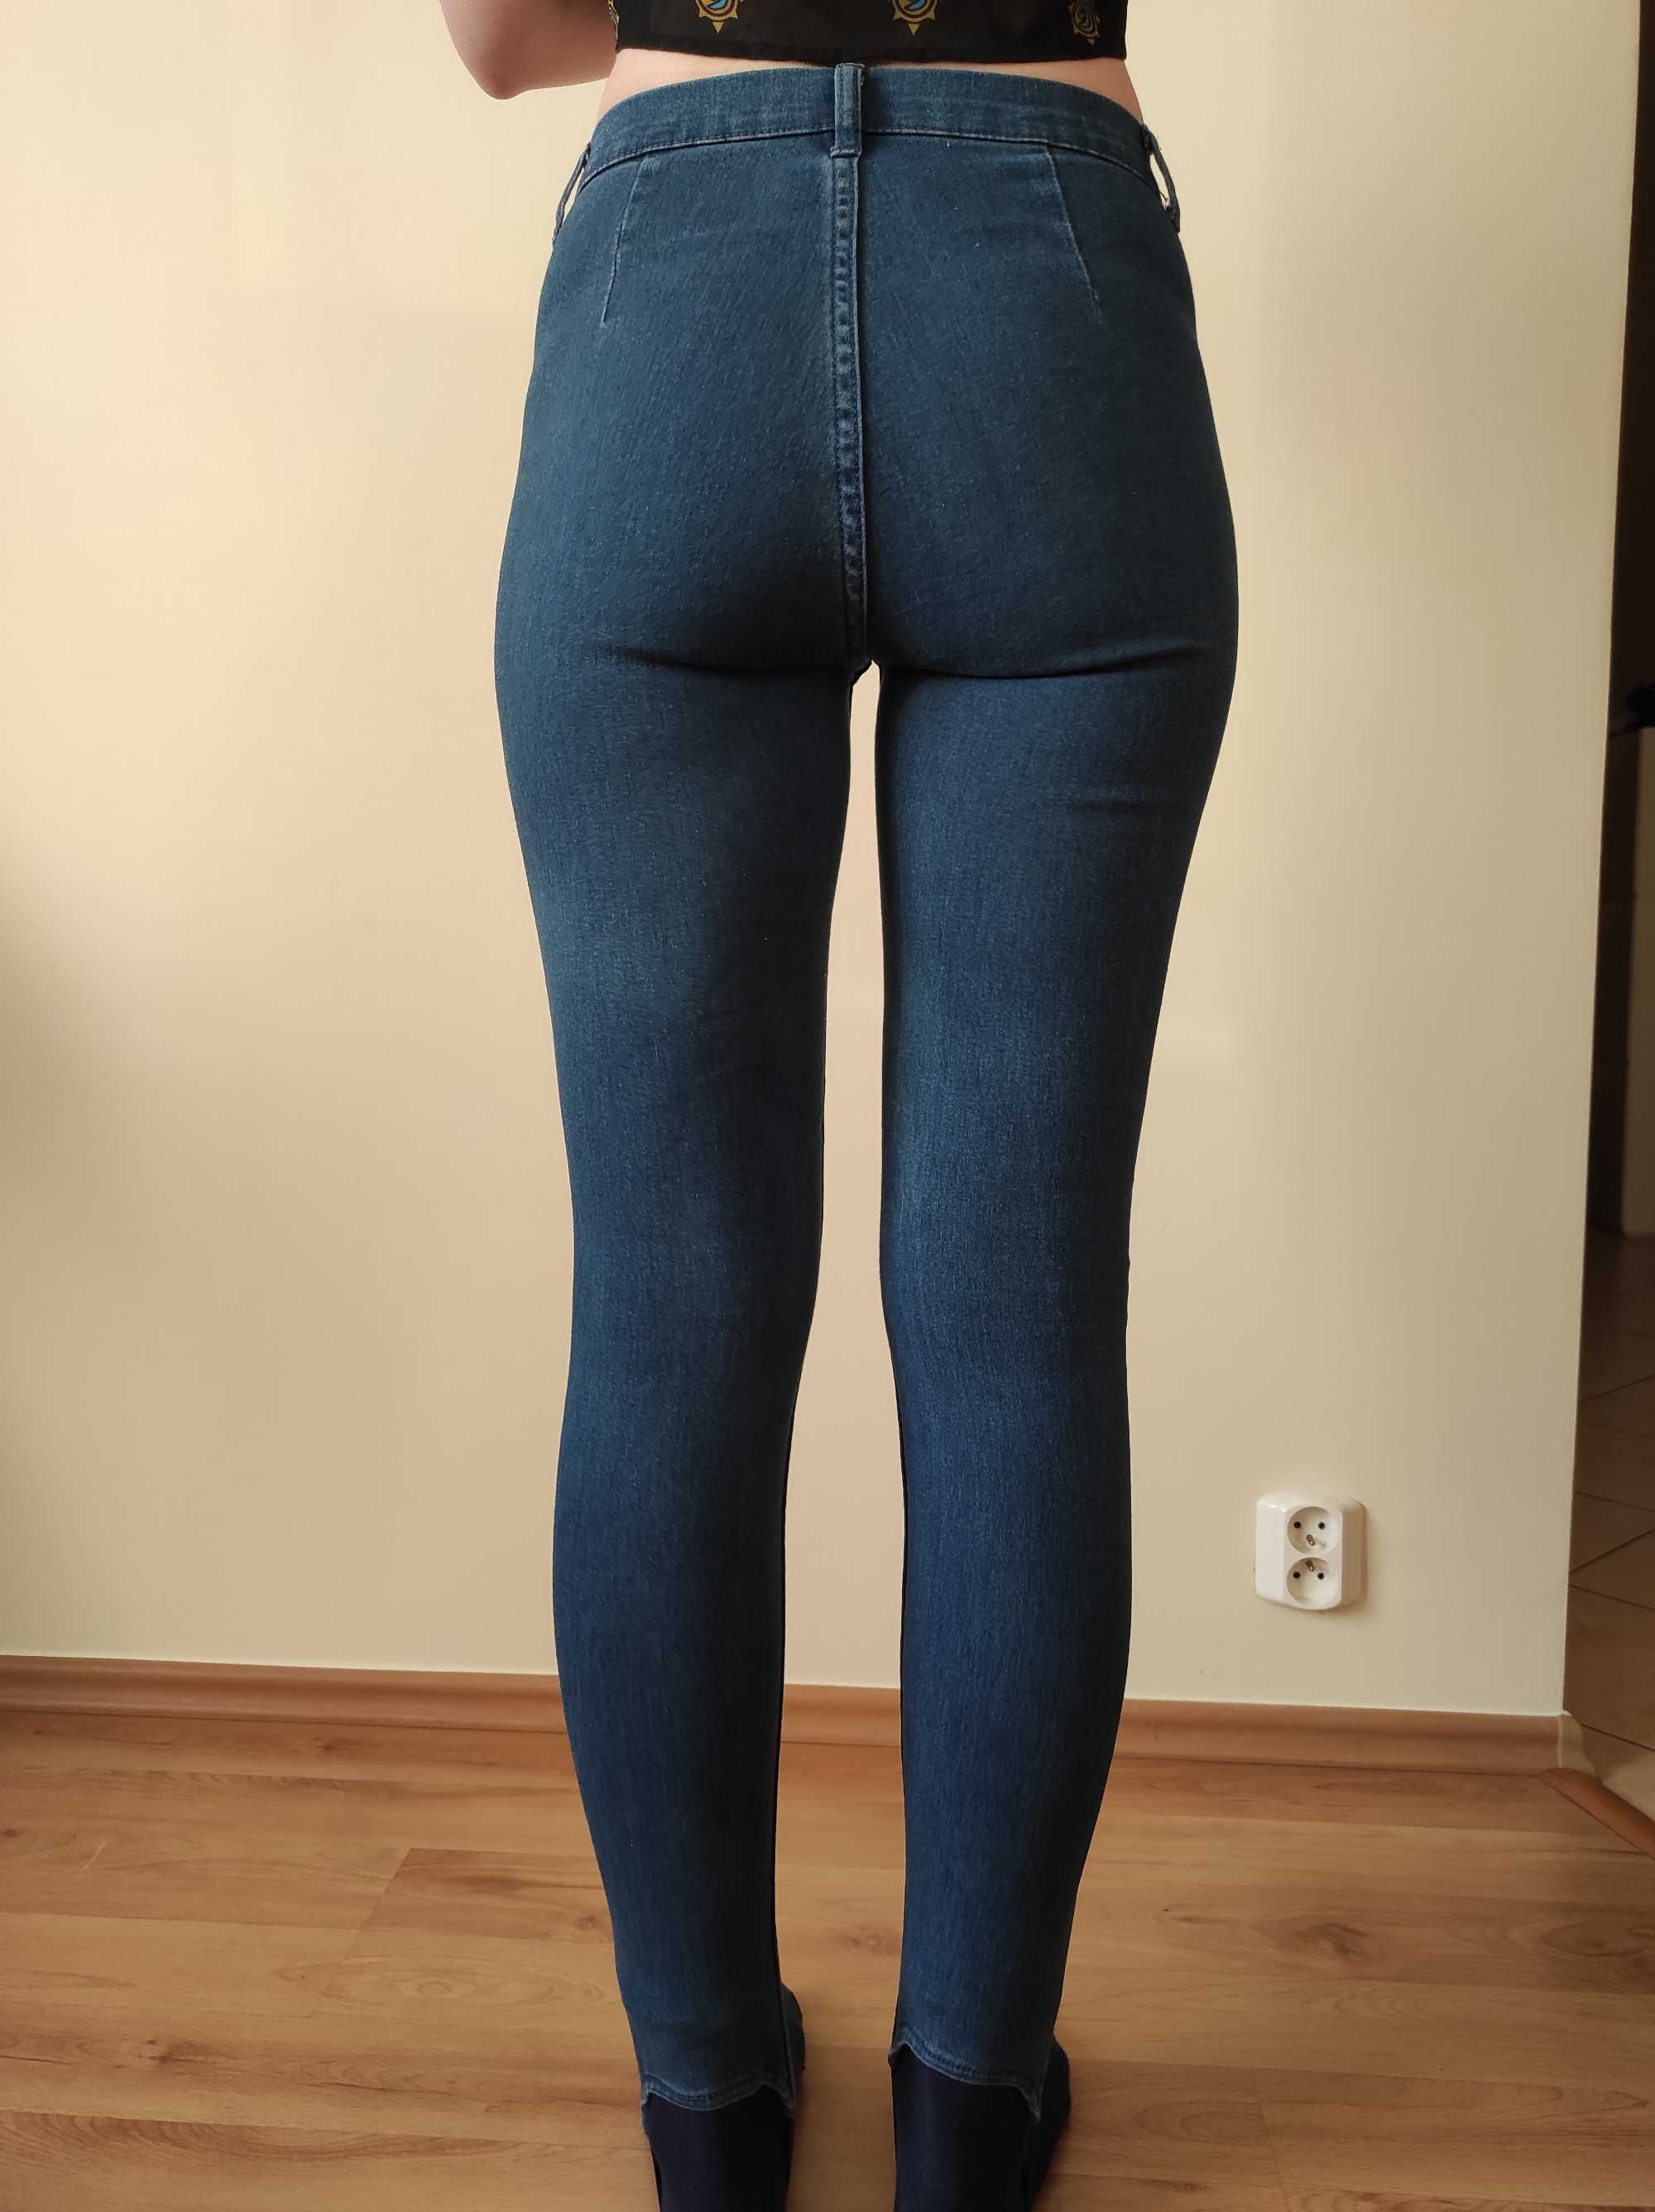 Spodnie Cropp z kolekcji #denim, jeansowe.